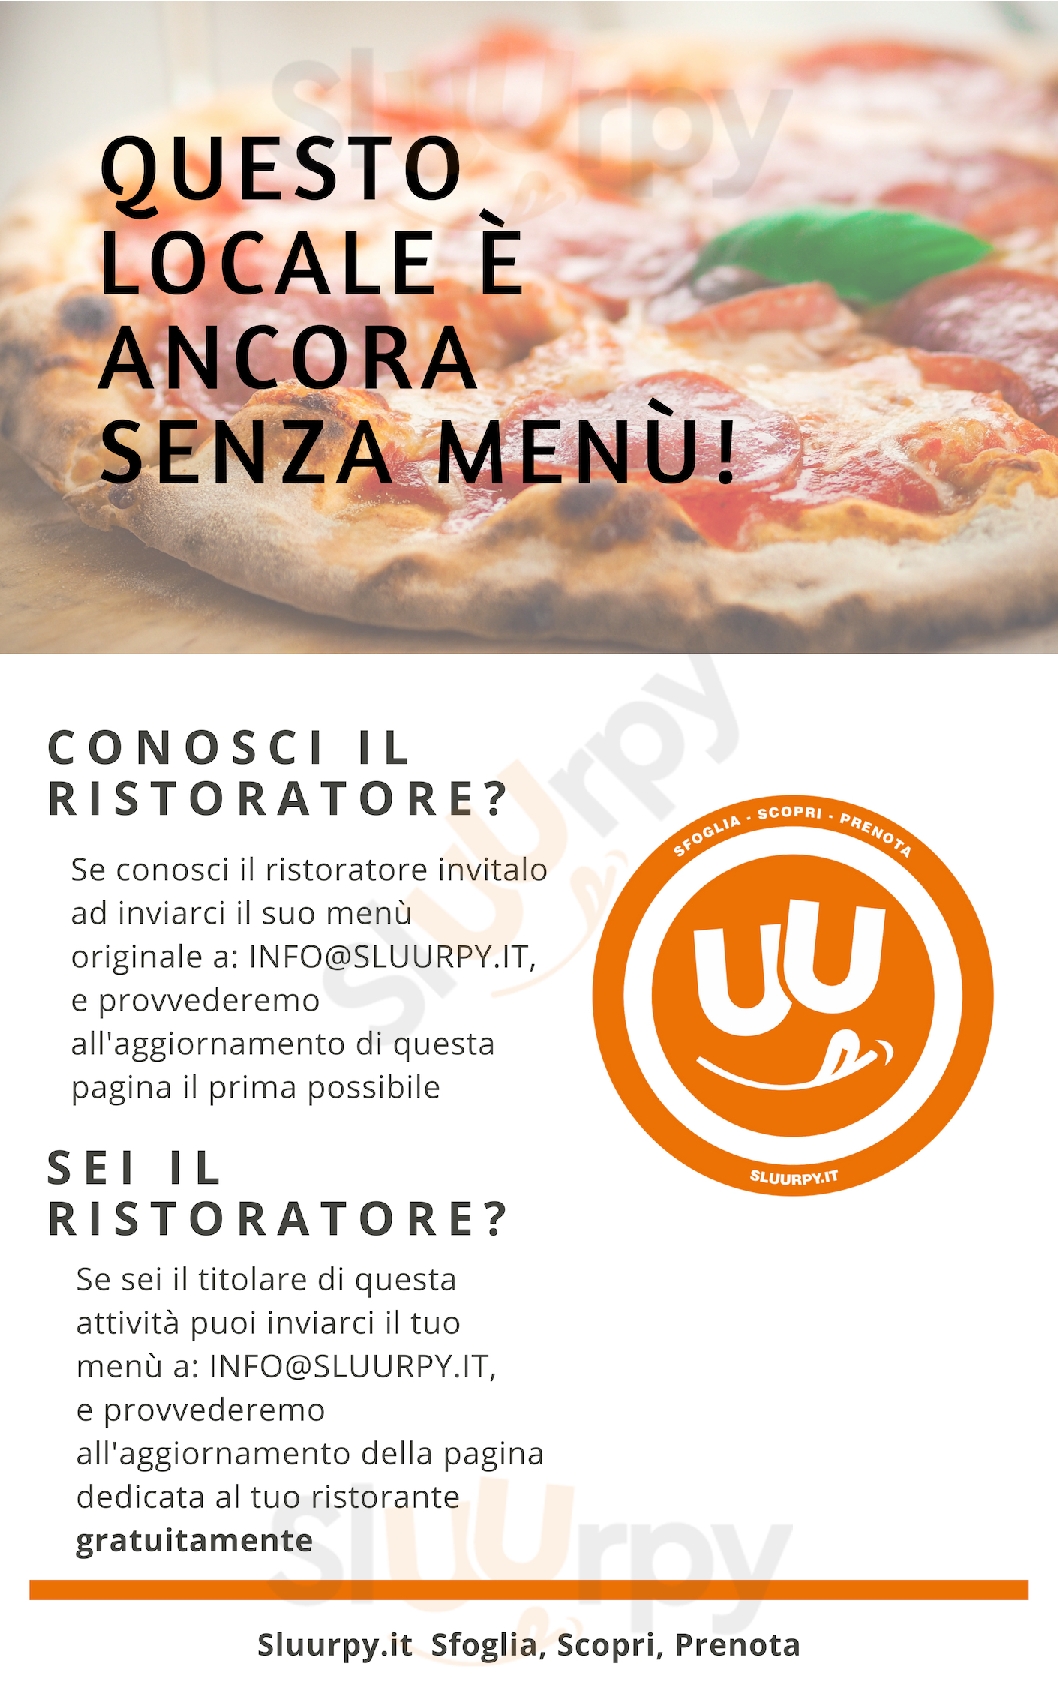 Rosmarino that's pizza - Avezzana Roma menù 1 pagina